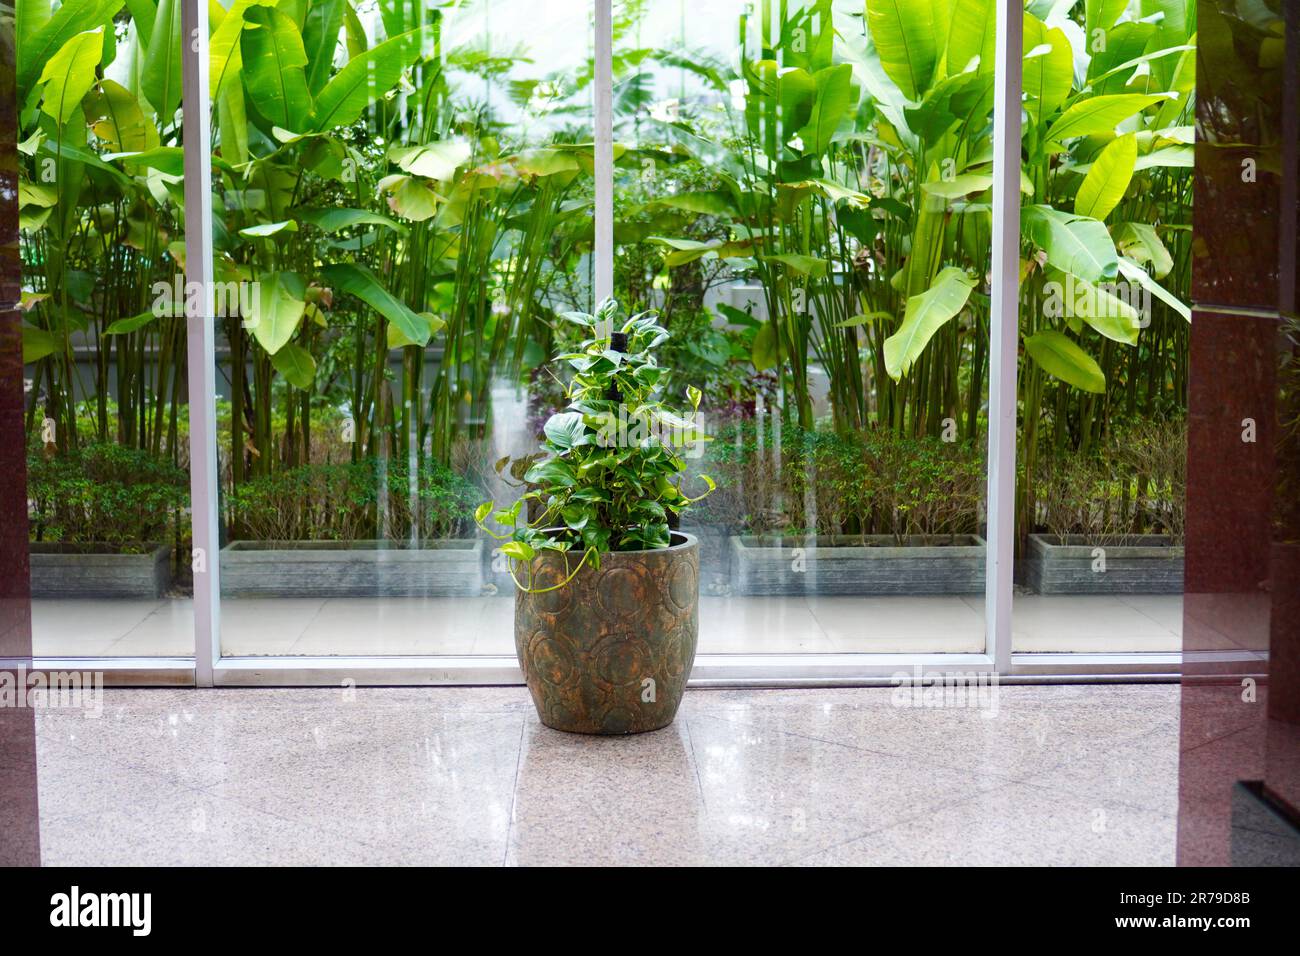 Plante d'ivoire de bétel également connue sous le nom de plante de pothos dorée en pot pour la décoration intérieure sur fond de végétation verte luxuriante devant un mur de verre Banque D'Images